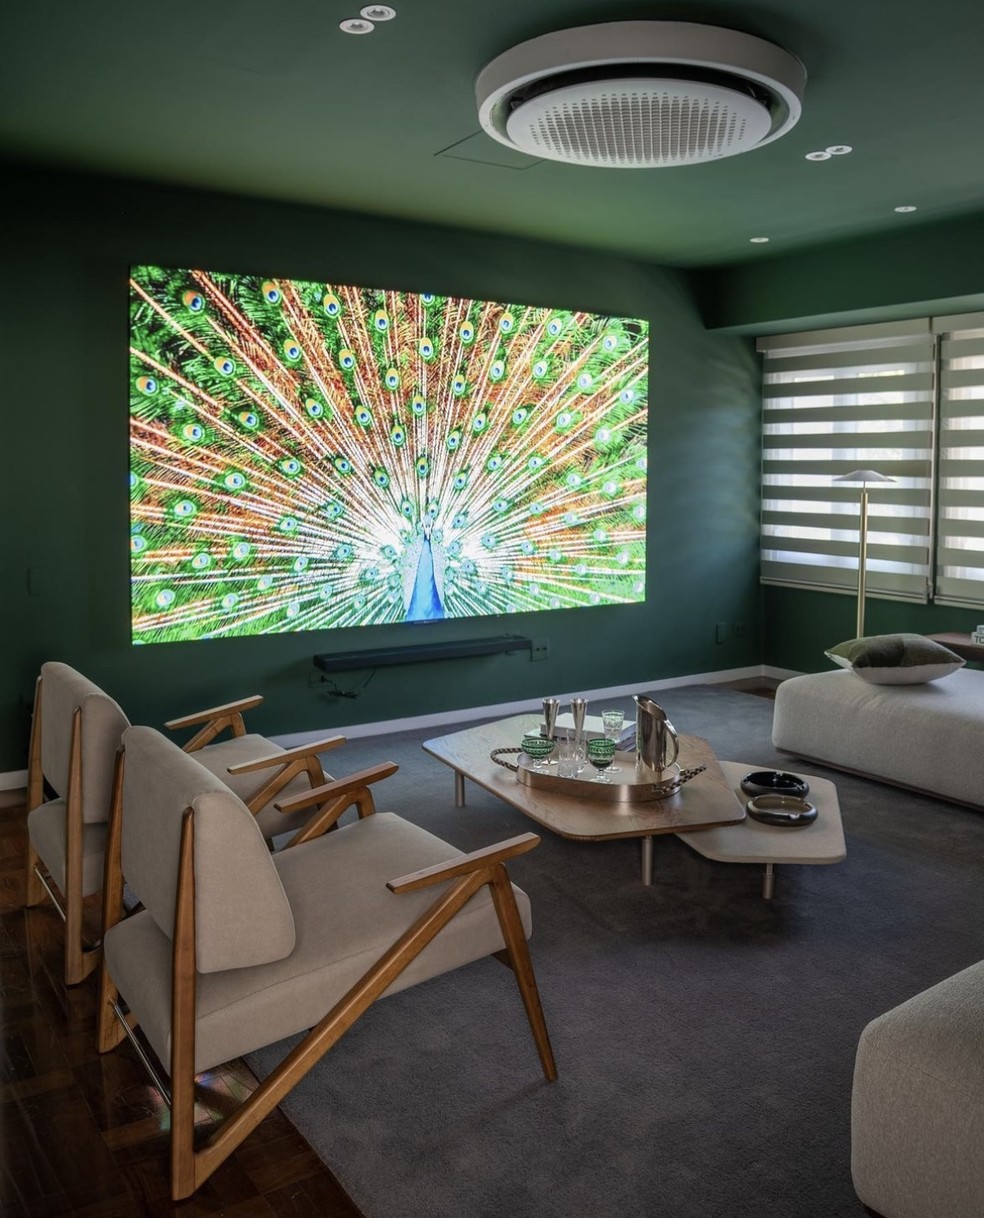 O tom verde nas paredes e no teto da sala de TV valoriza a percepção de qualidade de imagem — Foto: Cacá Bratke / Divulgação